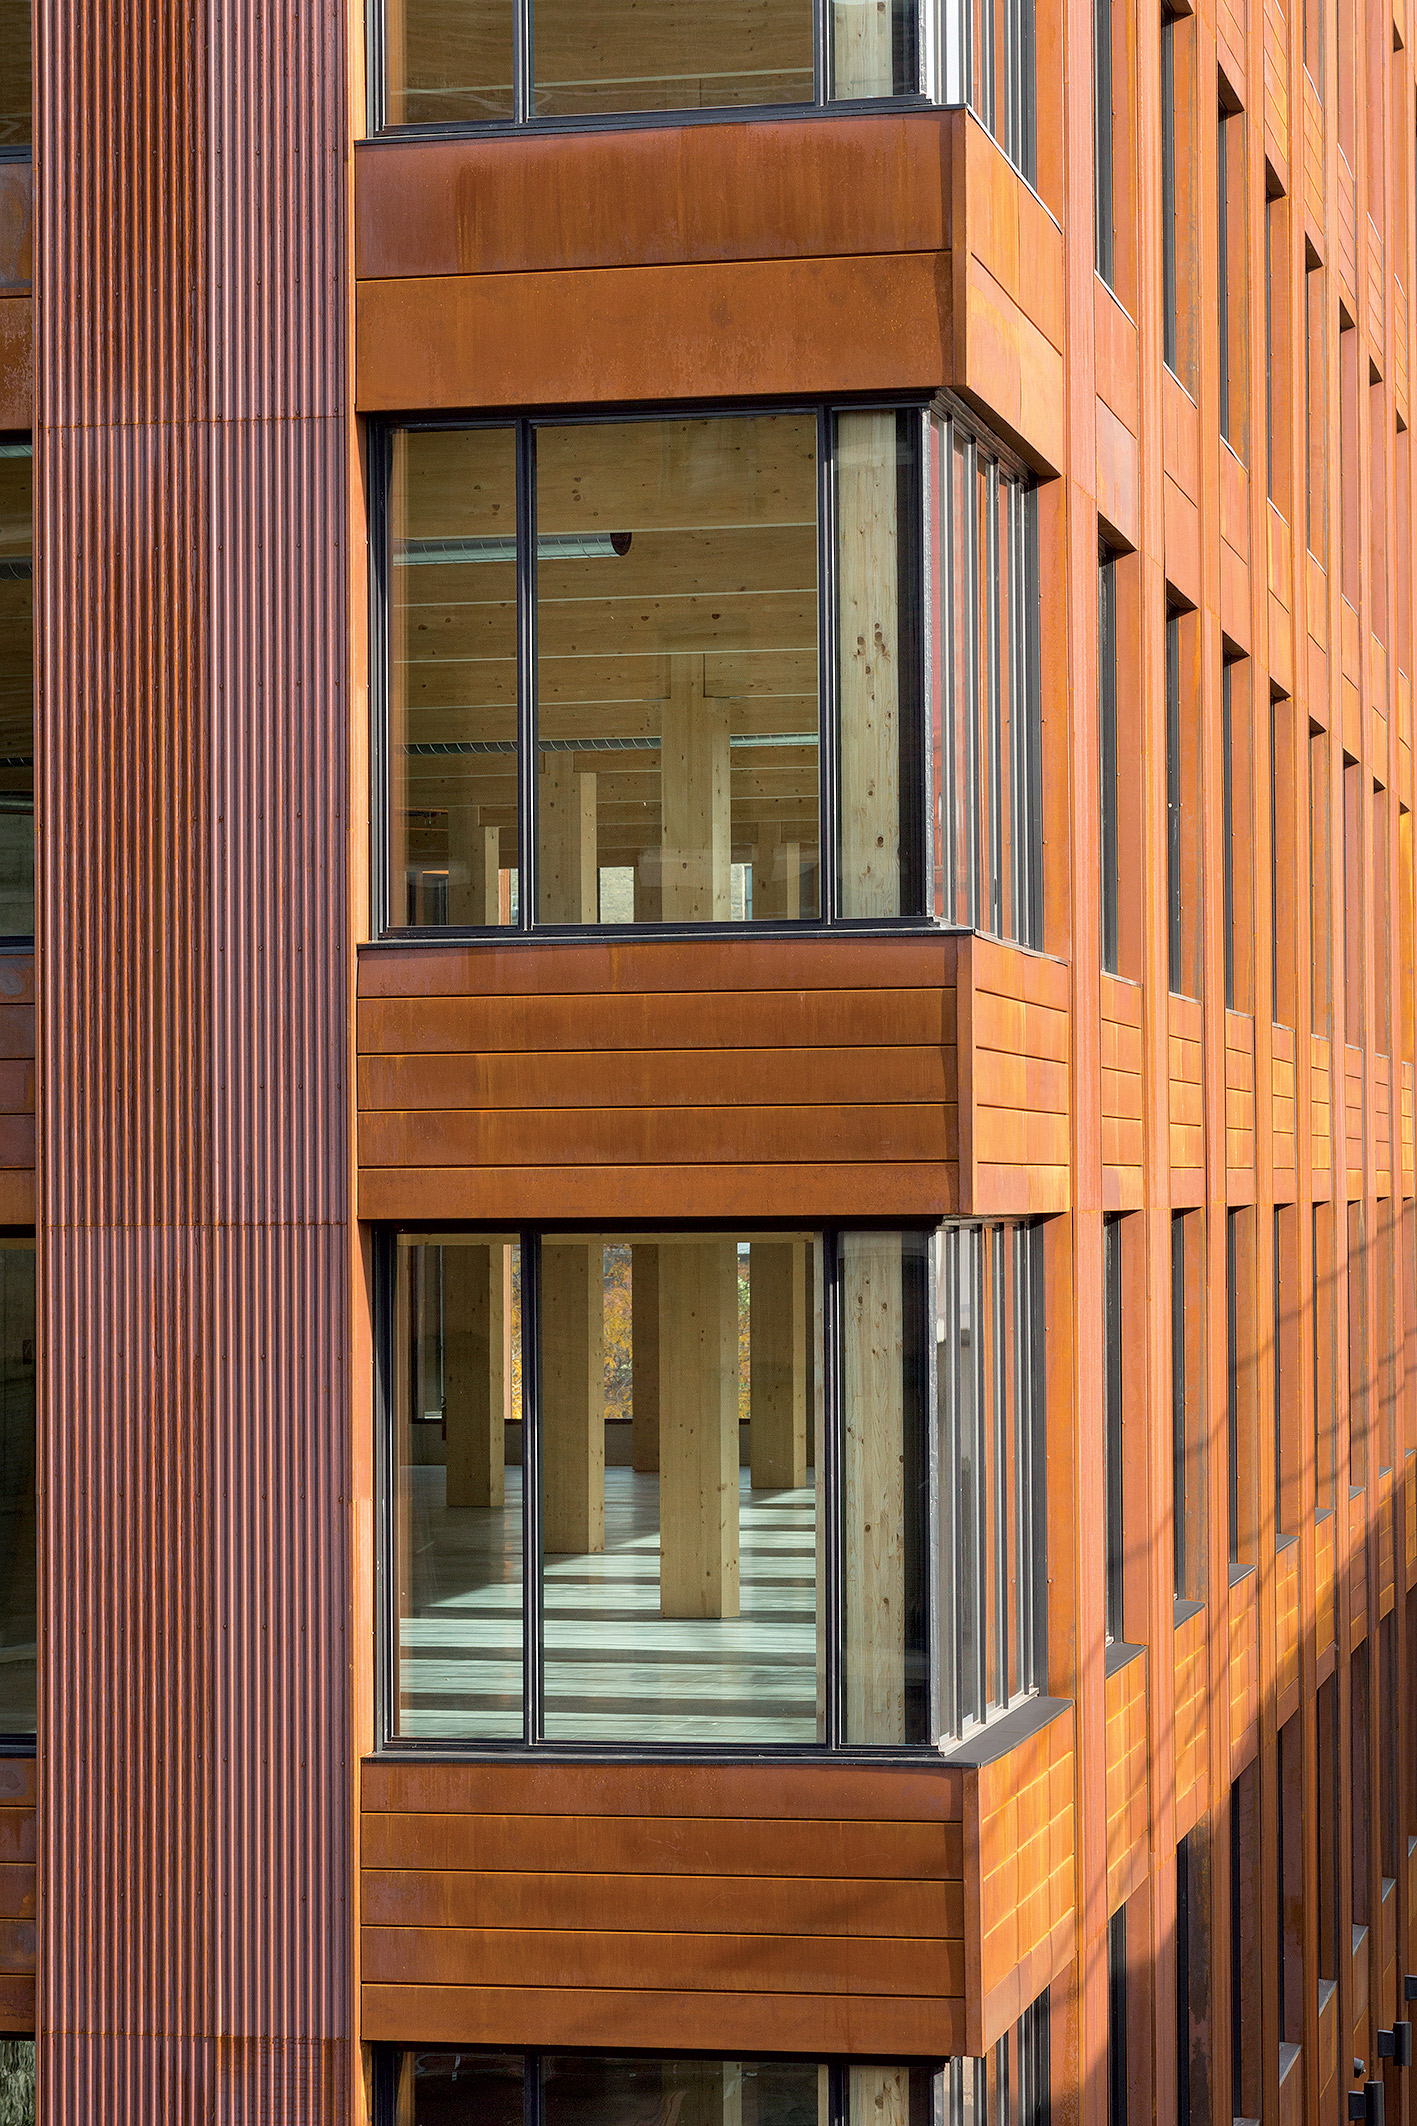 Jednoduché členenie fasády korešponduje s dreveným rastrom interiéru.